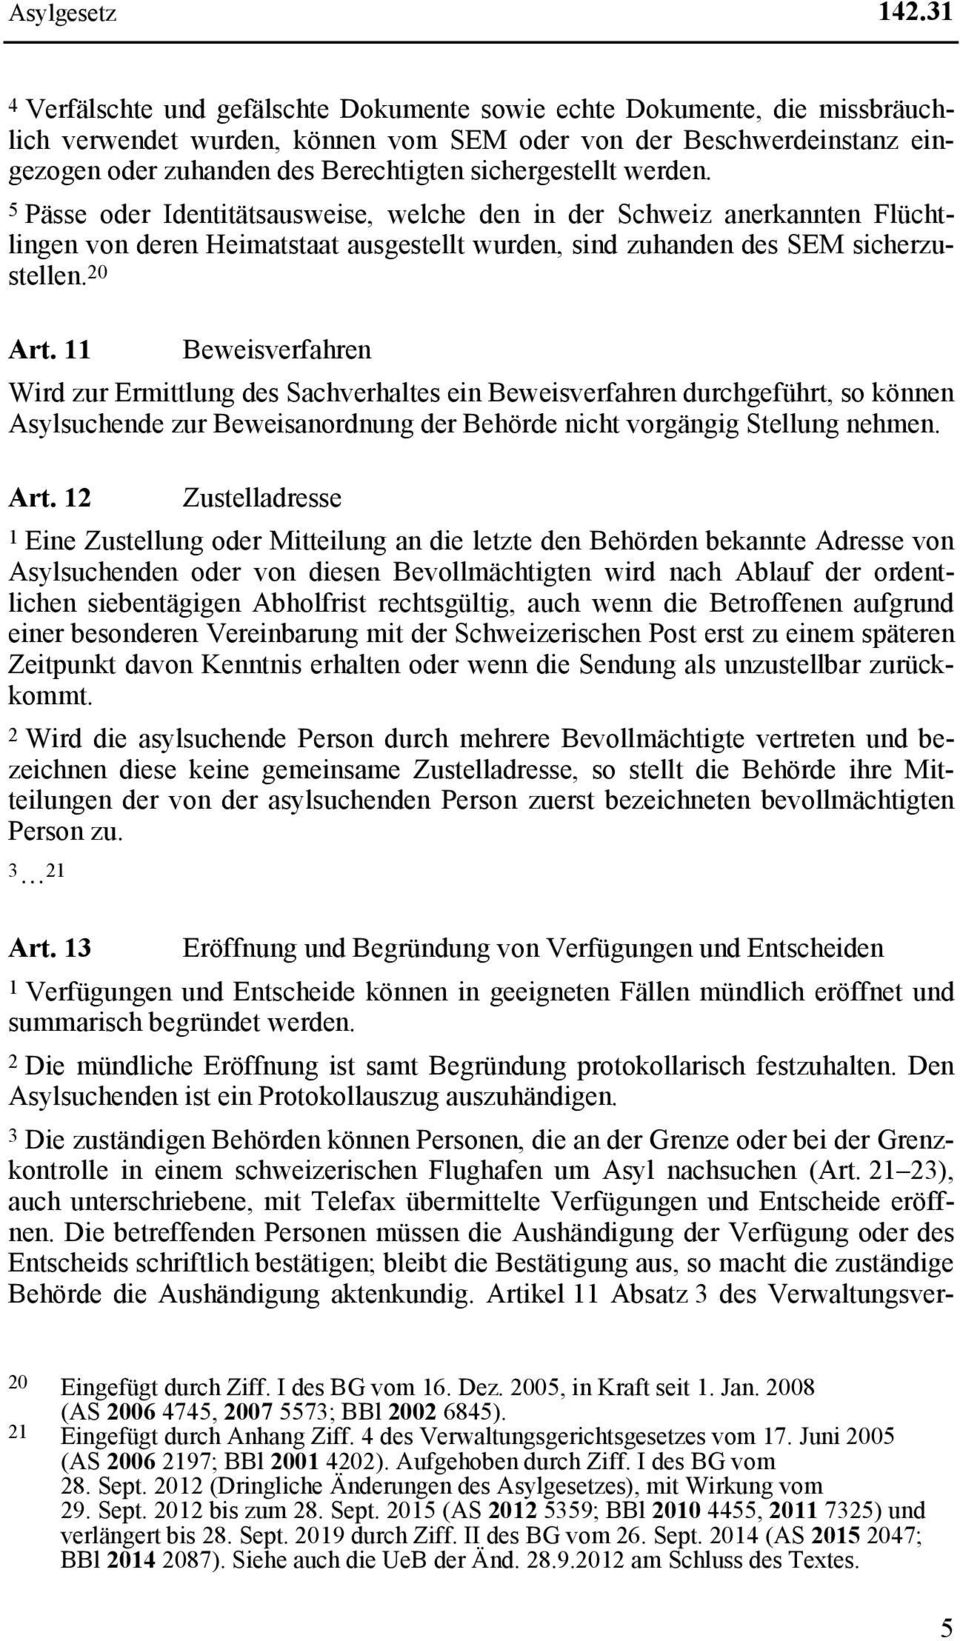 sichergestellt werden. 5 Pässe oder Identitätsausweise, welche den in der Schweiz anerkannten Flüchtlingen von deren Heimatstaat ausgestellt wurden, sind zuhanden des SEM sicherzustellen. 20 Art.